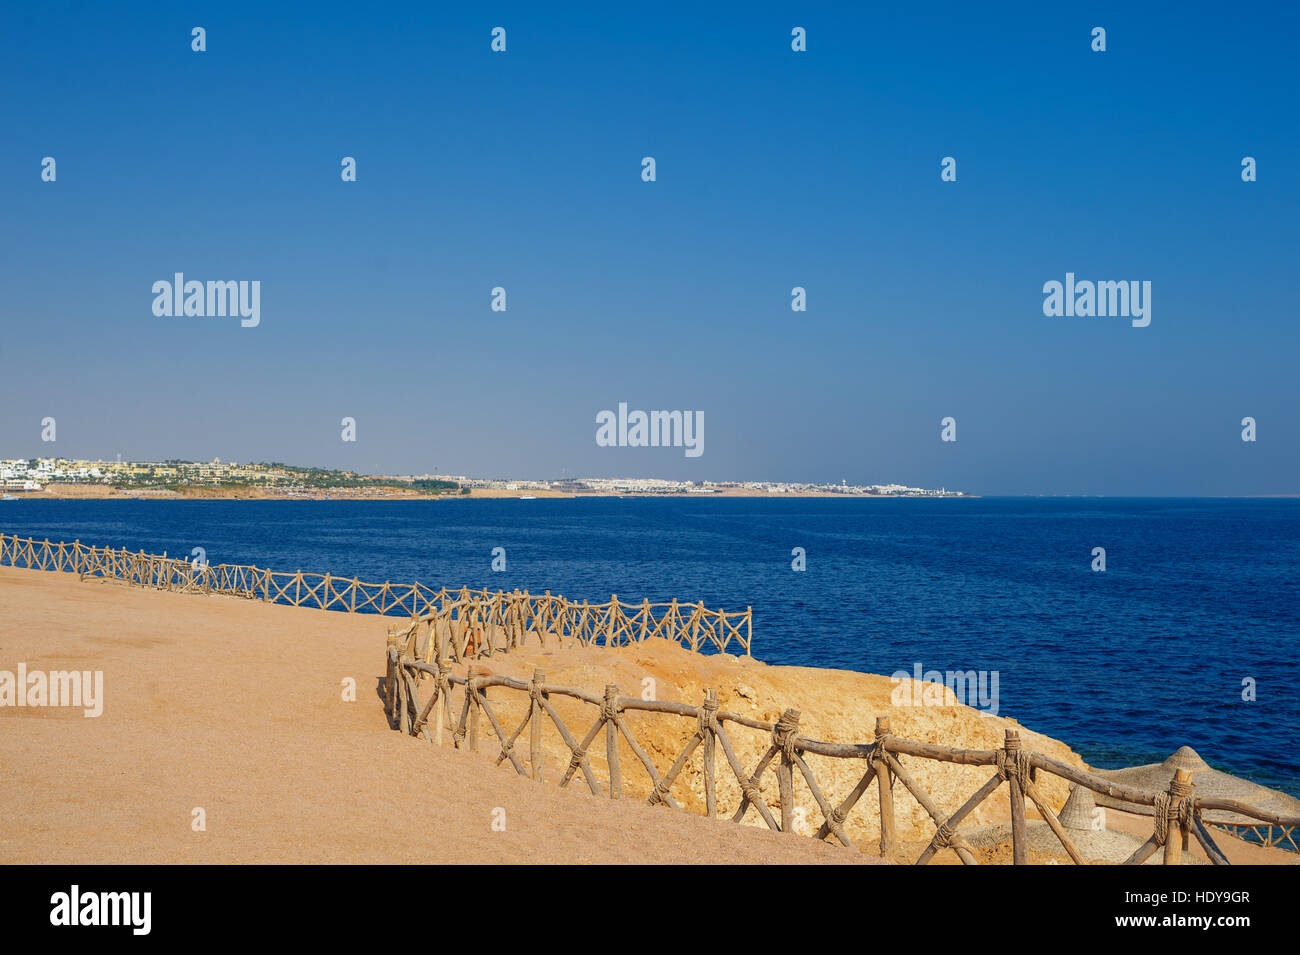 La côte de la mer. Plage de sable en Egypte Banque D'Images